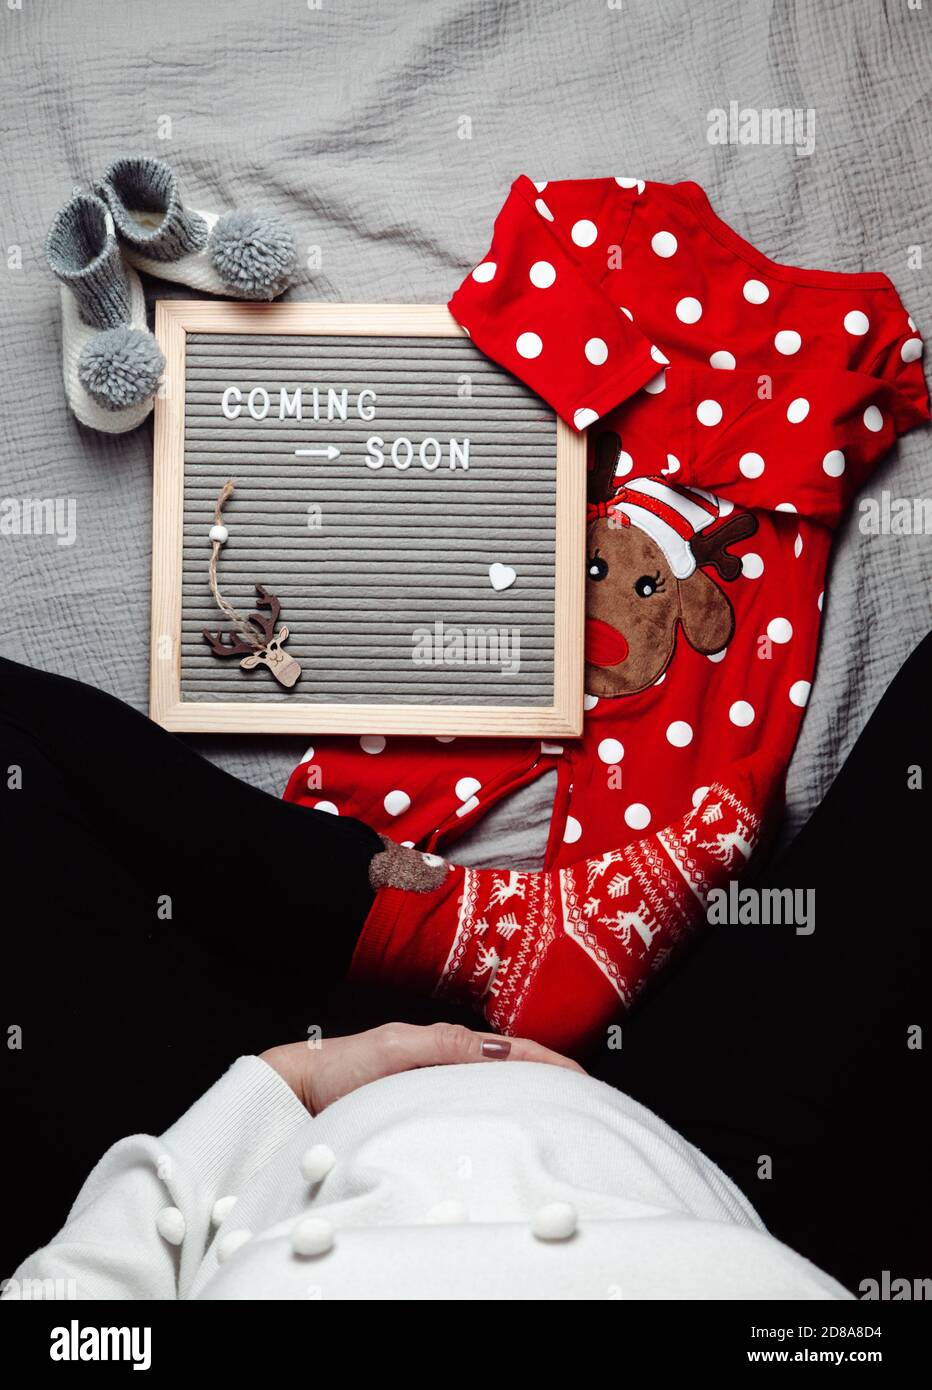 Schwangere Frau sitzt mit einem Coming Soon Baby Ankündigungszeichen. Demnächst Weihnachtskonzept. Schwangerschaftsbauch. Leerzeichen. Stockfoto